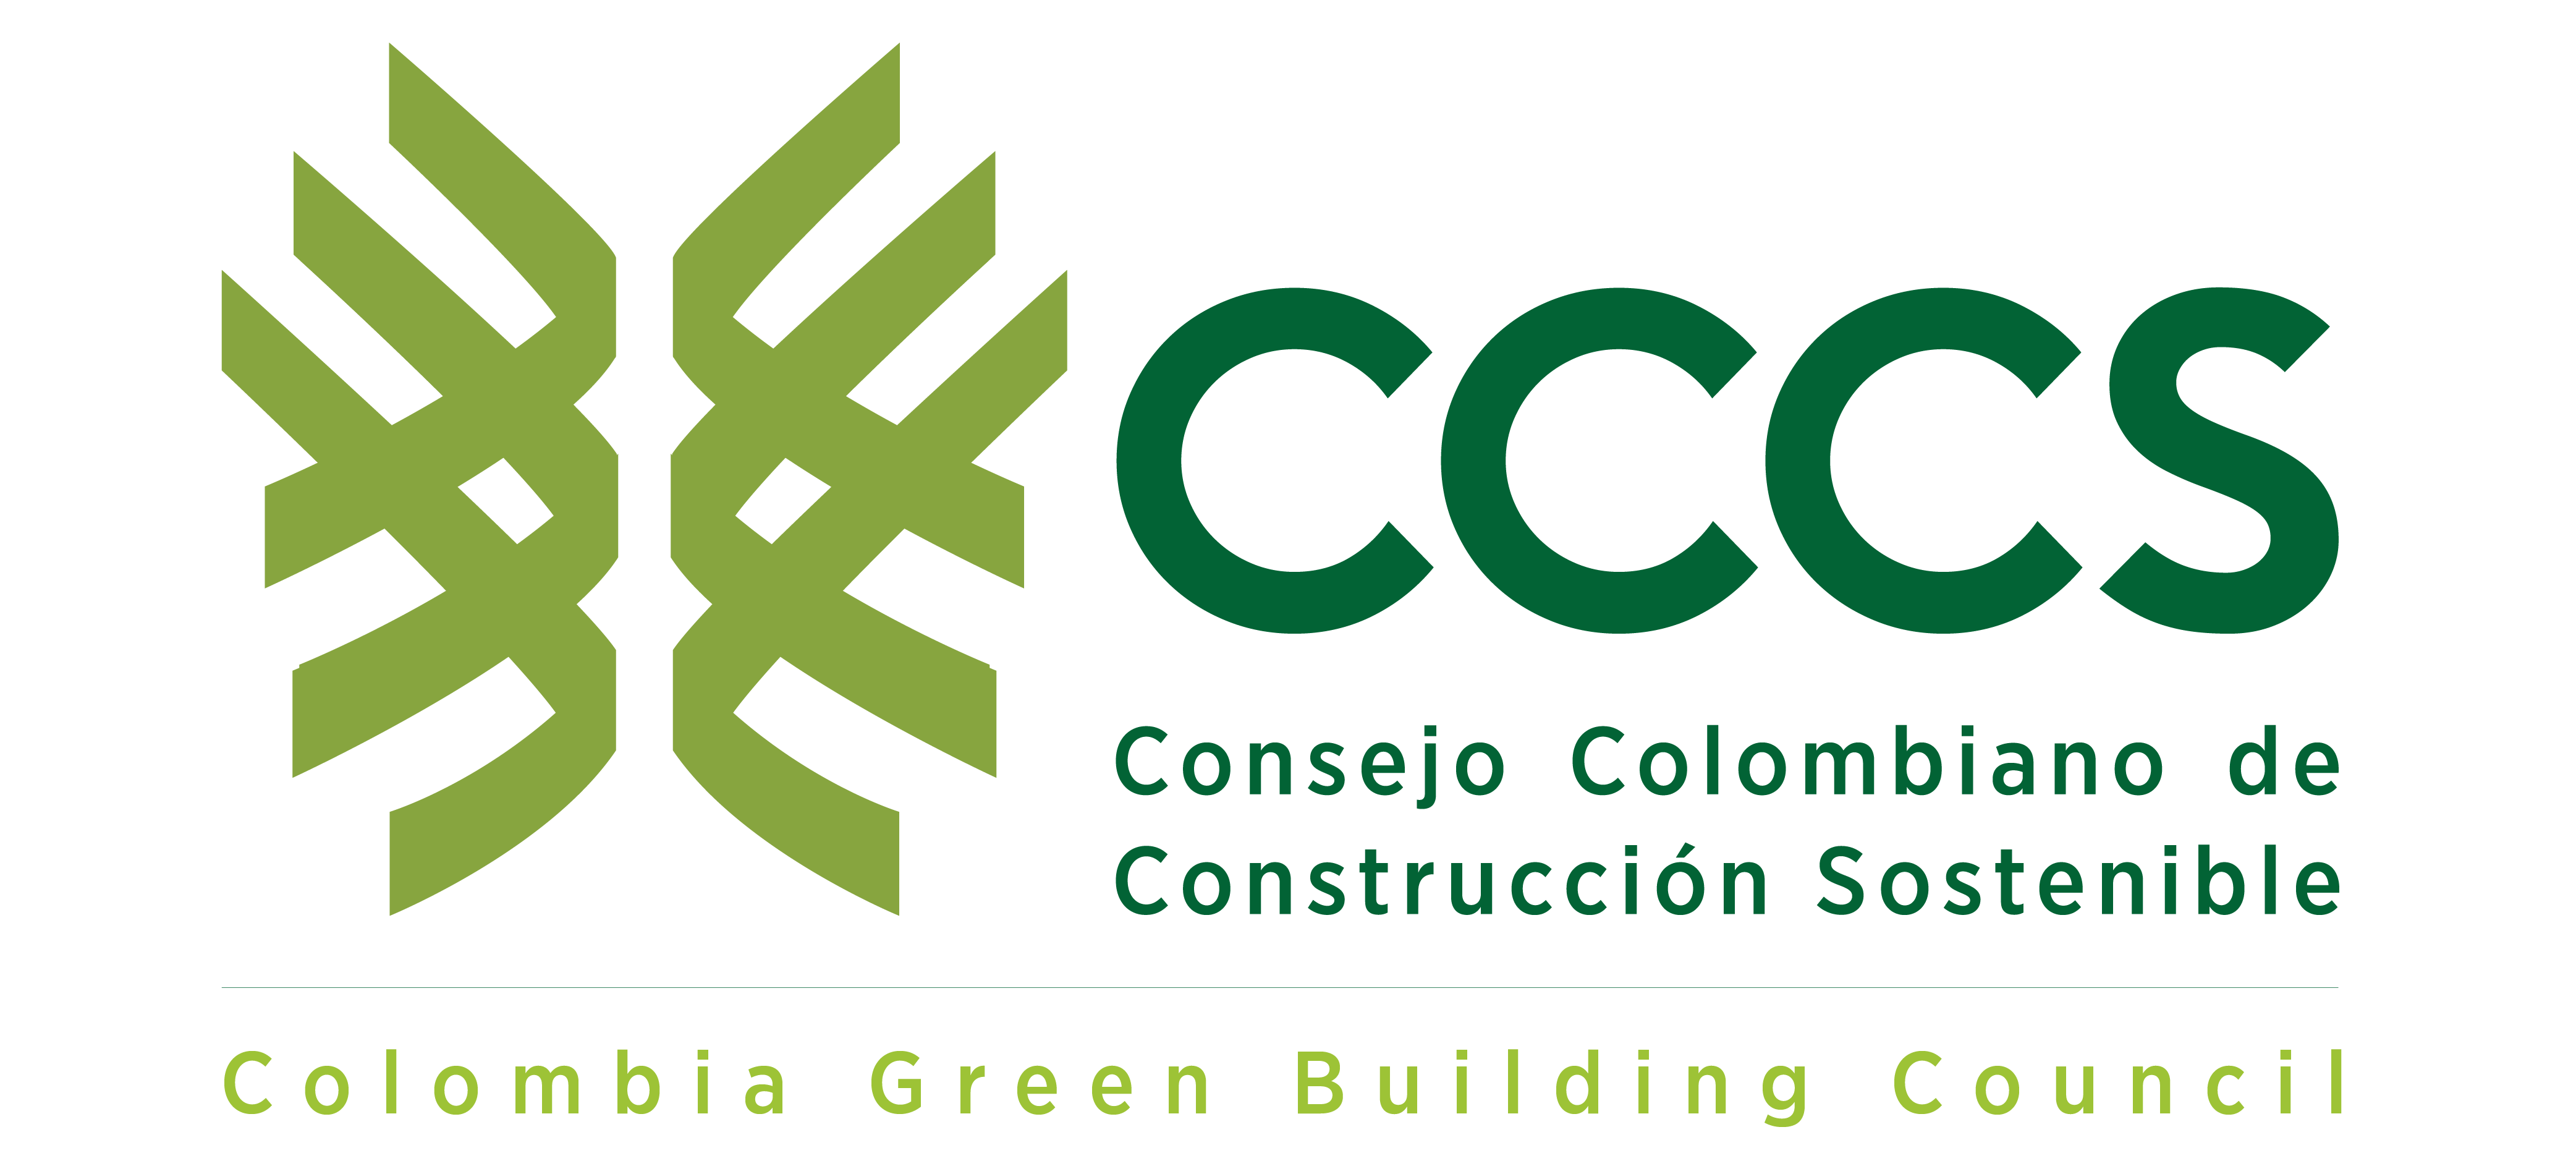 Consejo Colombiano de Construcción Sostenible